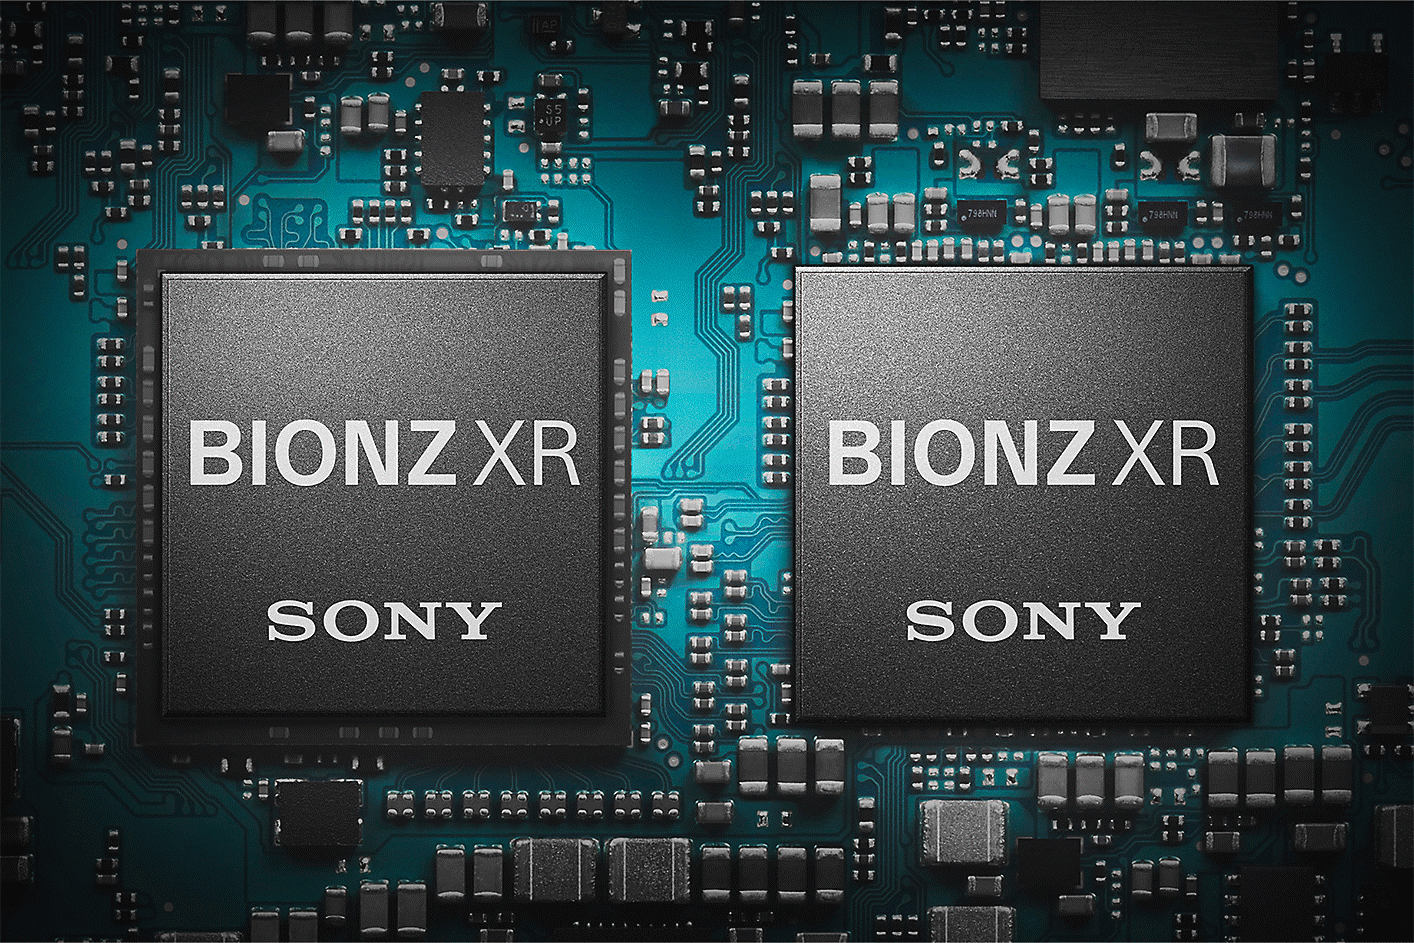 BIONZ XR 影像處理器的相片